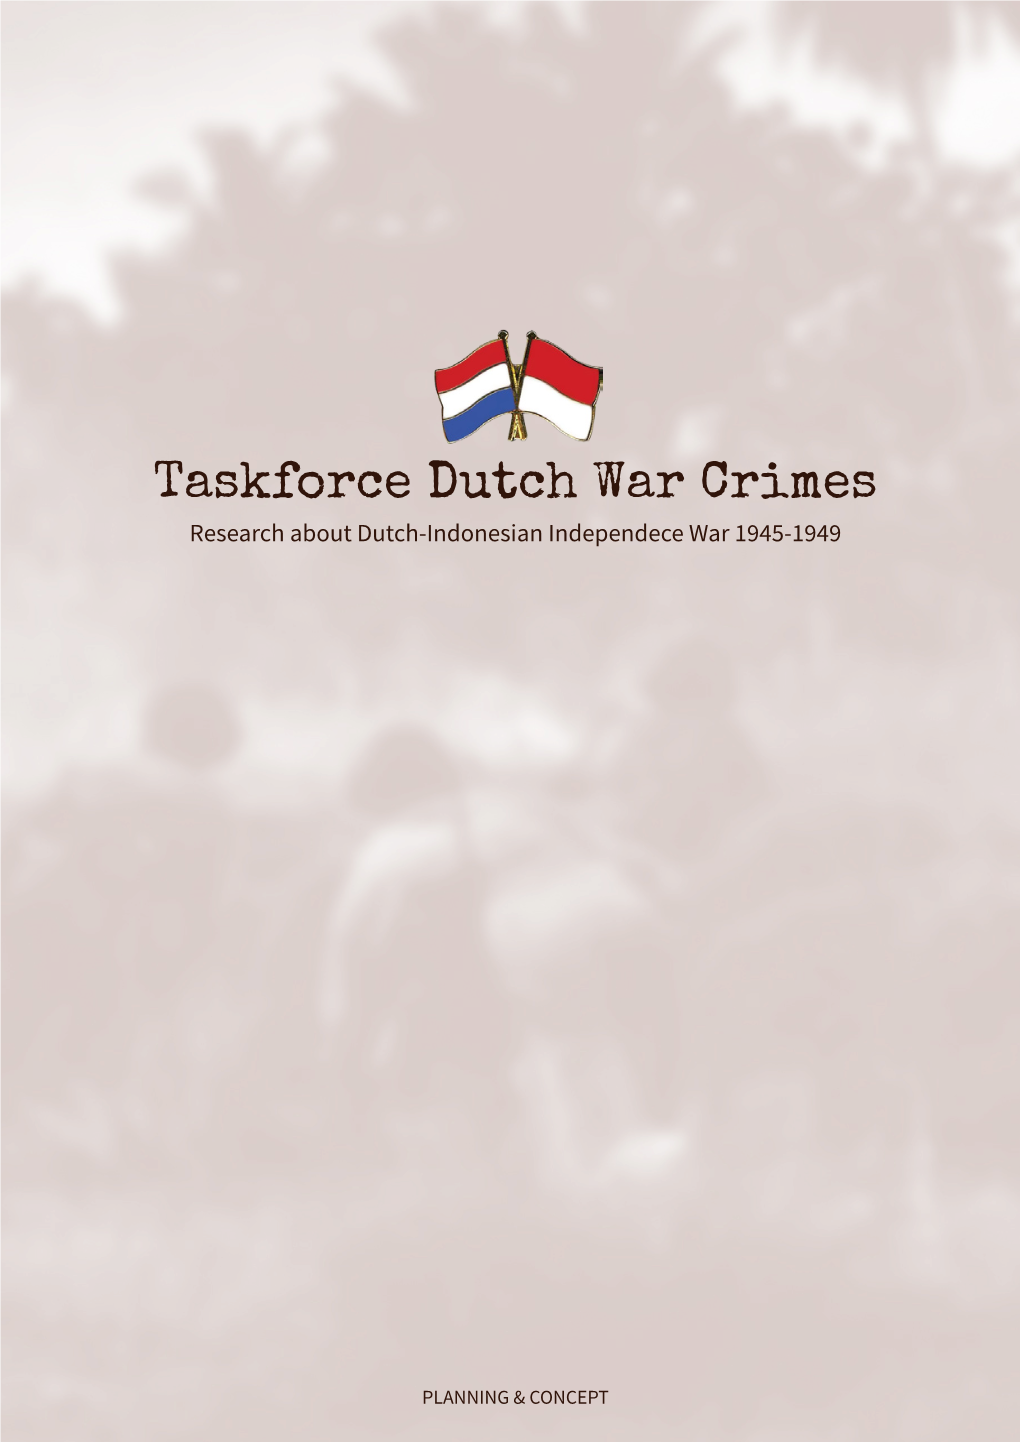 Taskforce Dutch War Crimes Research About Dutch-Indonesian Independece War 1945-1949